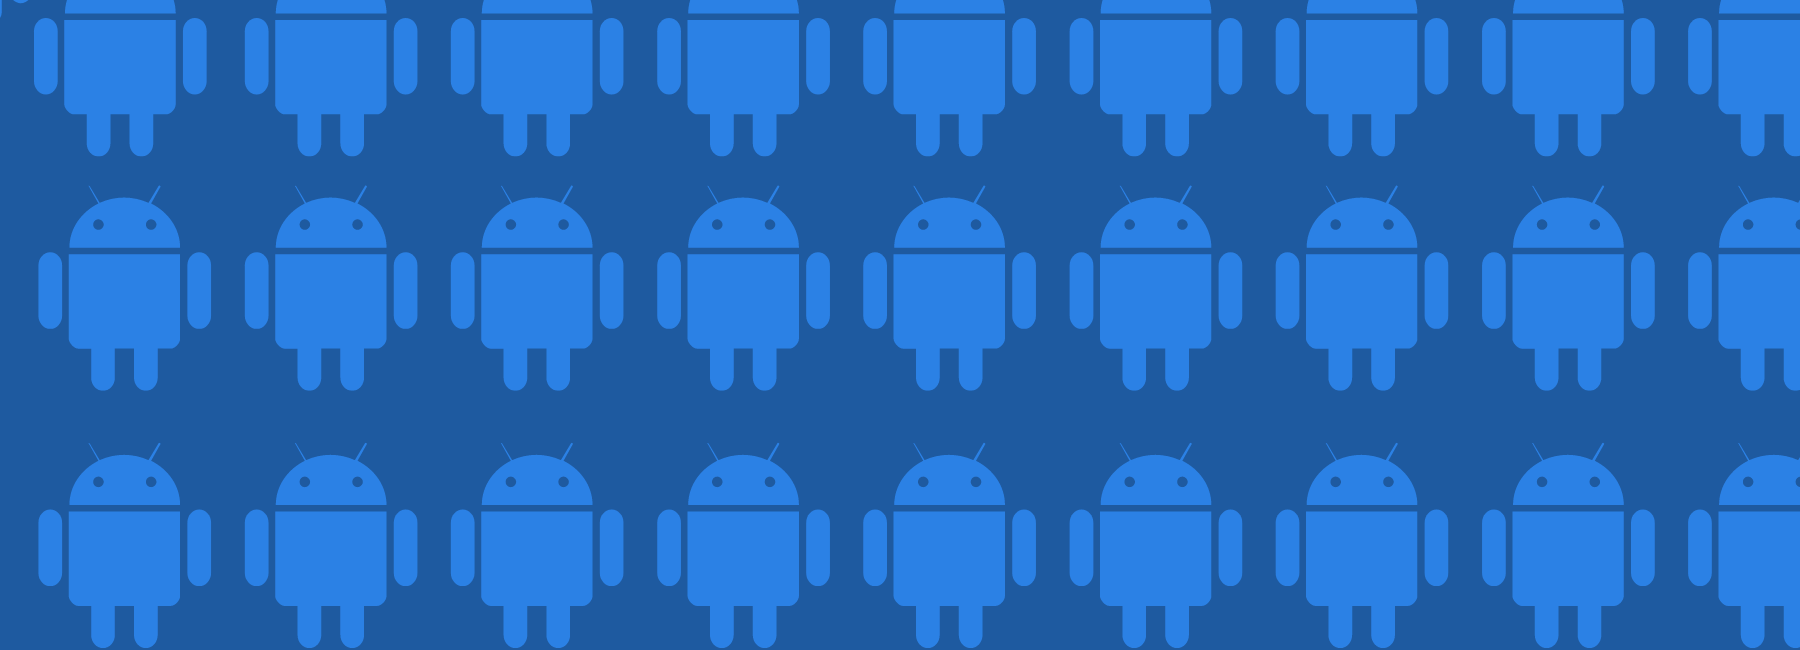 Krachtige technologie met een intuïtief design: Onze nieuwe native Android SDK